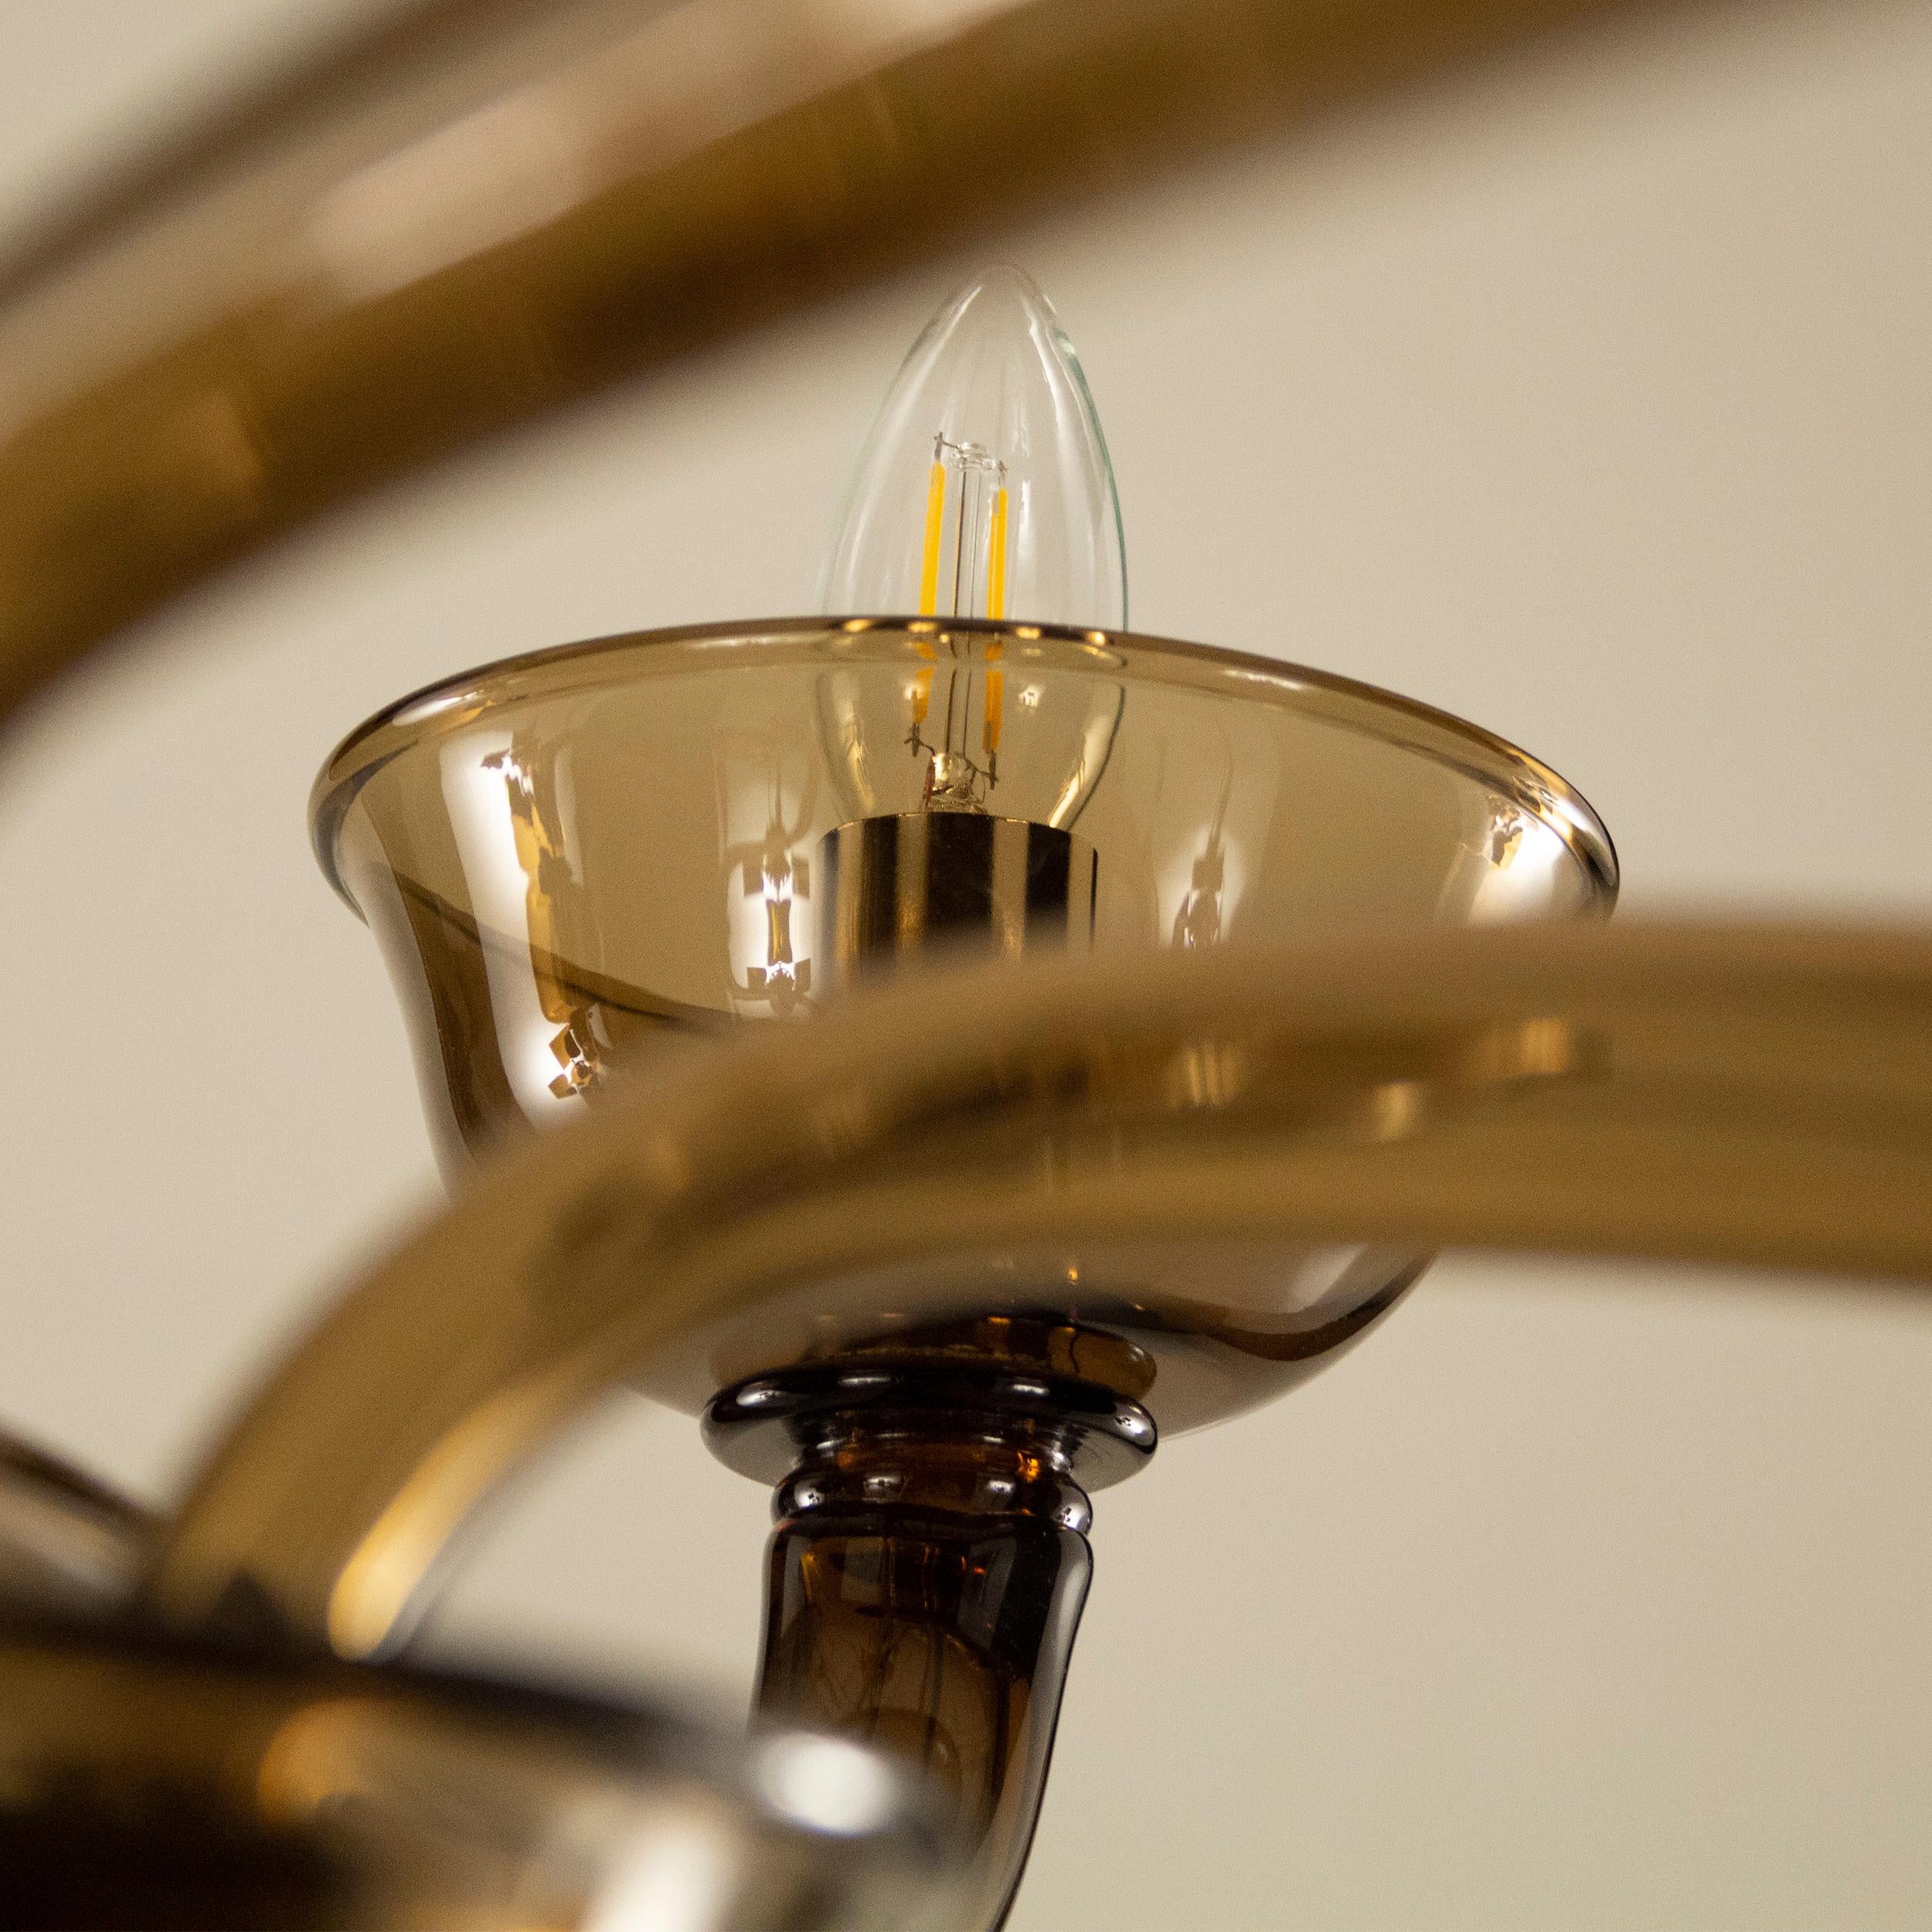 Die Glaslüster Portofino ist die neue Kollektion von Lampen aus glattem Kunstglas, die mit schlichten Hängeelementen aus geblasenem Glas und Metallausführungen in Gold oder Nickel verziert sind.
Die Kollektion, die in den Katalog Timeless von